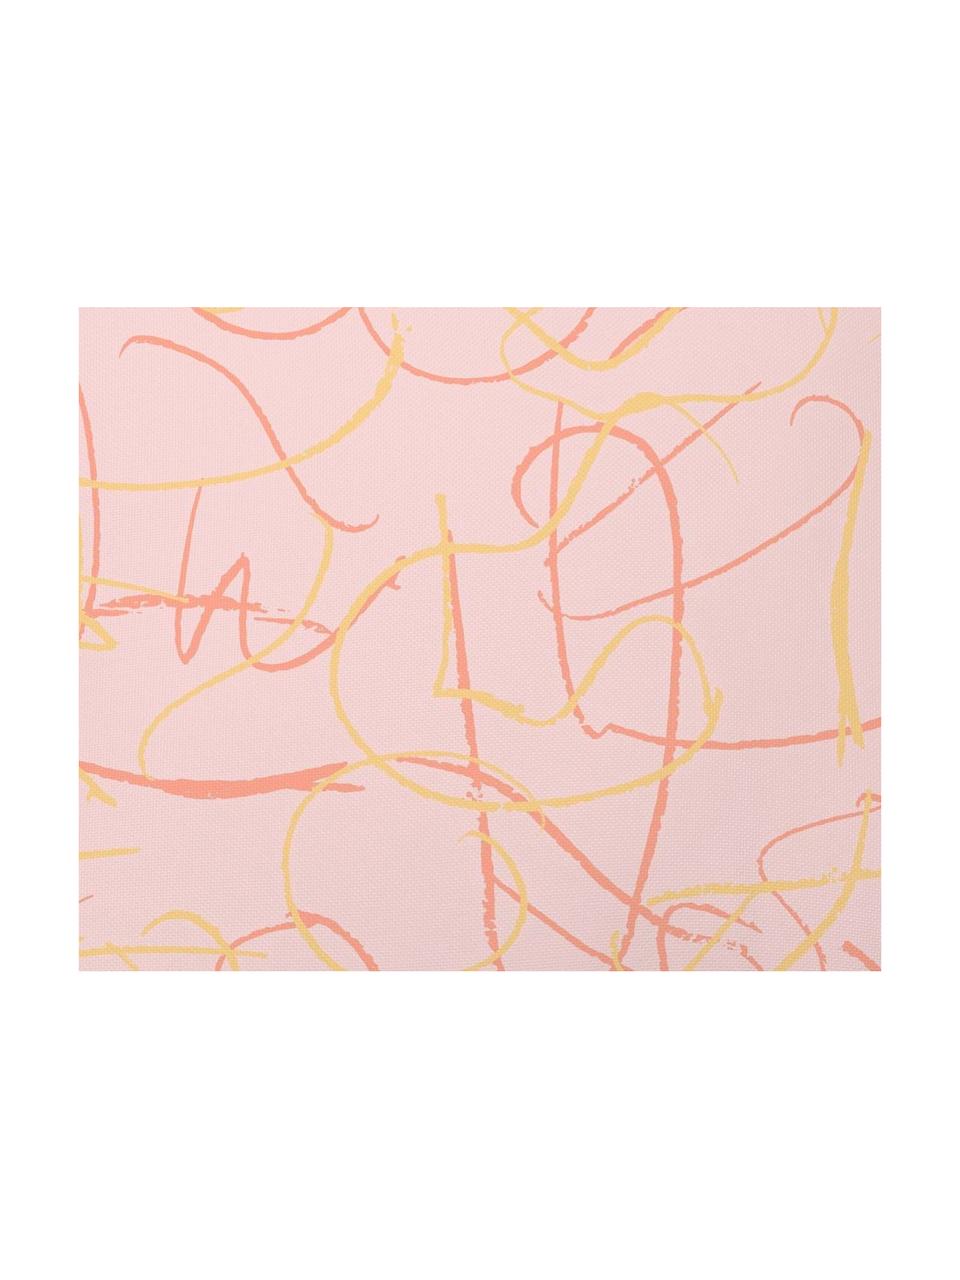 Poszewka na poduszkę Doodle, Poliester, Blady różowy, żółty, S 40 x D 40 cm